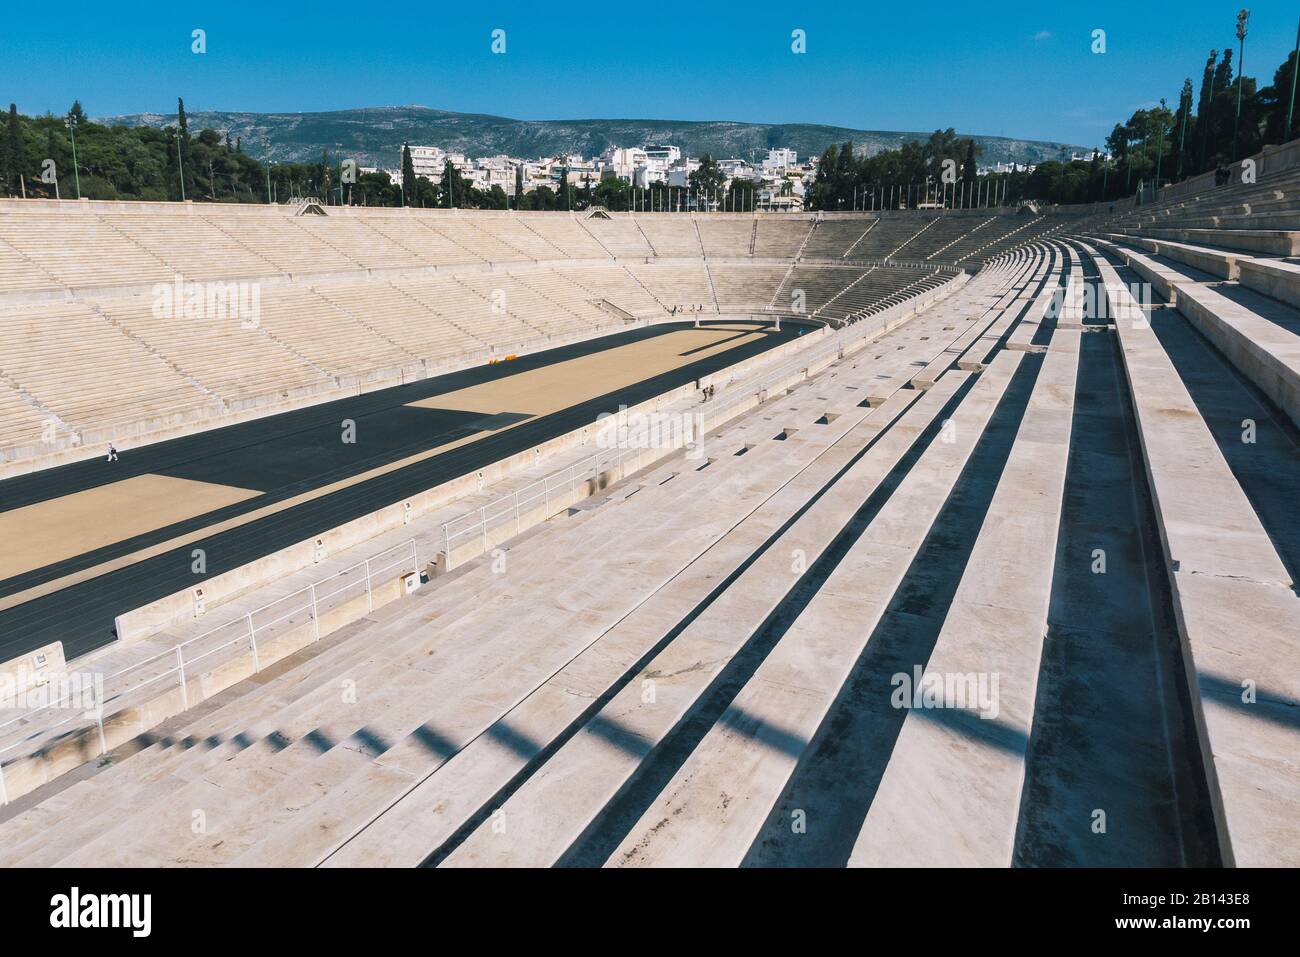 Atenas, Grecia - 9 de mayo de 2011: Estadio Panatenaico llamado Kallimarmaro, Descripción general del estadio antiguo de Atenas de los Bleachers. El Arena está construido Foto de stock